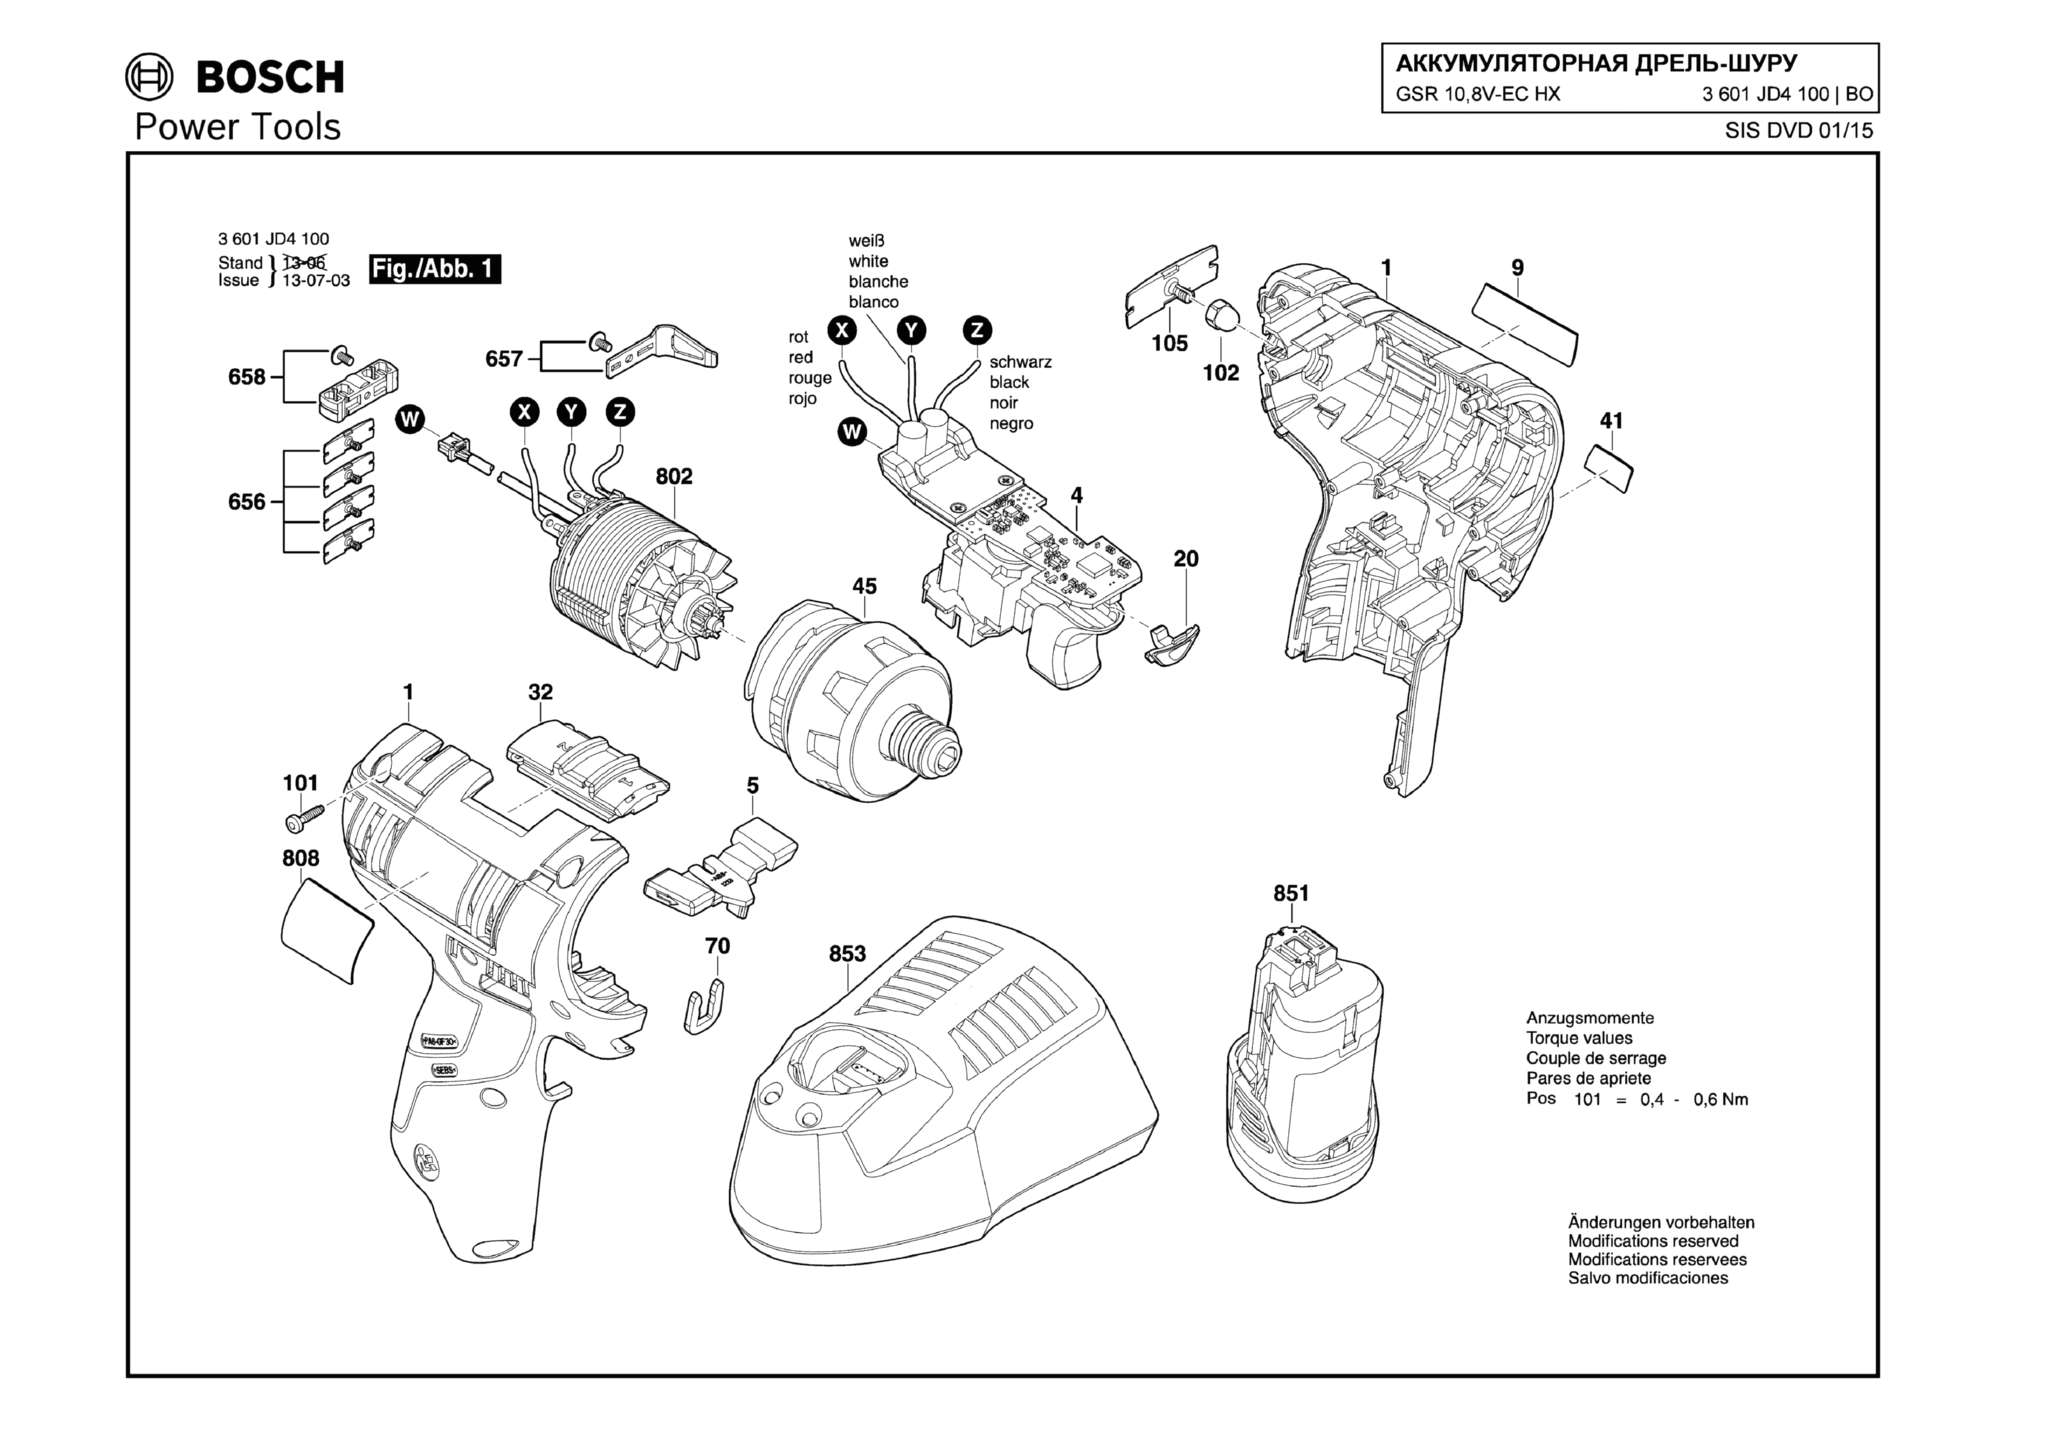 Запчасти, схема и деталировка Bosch GSR 10,8V-EC HX (ТИП 3601JD4100)